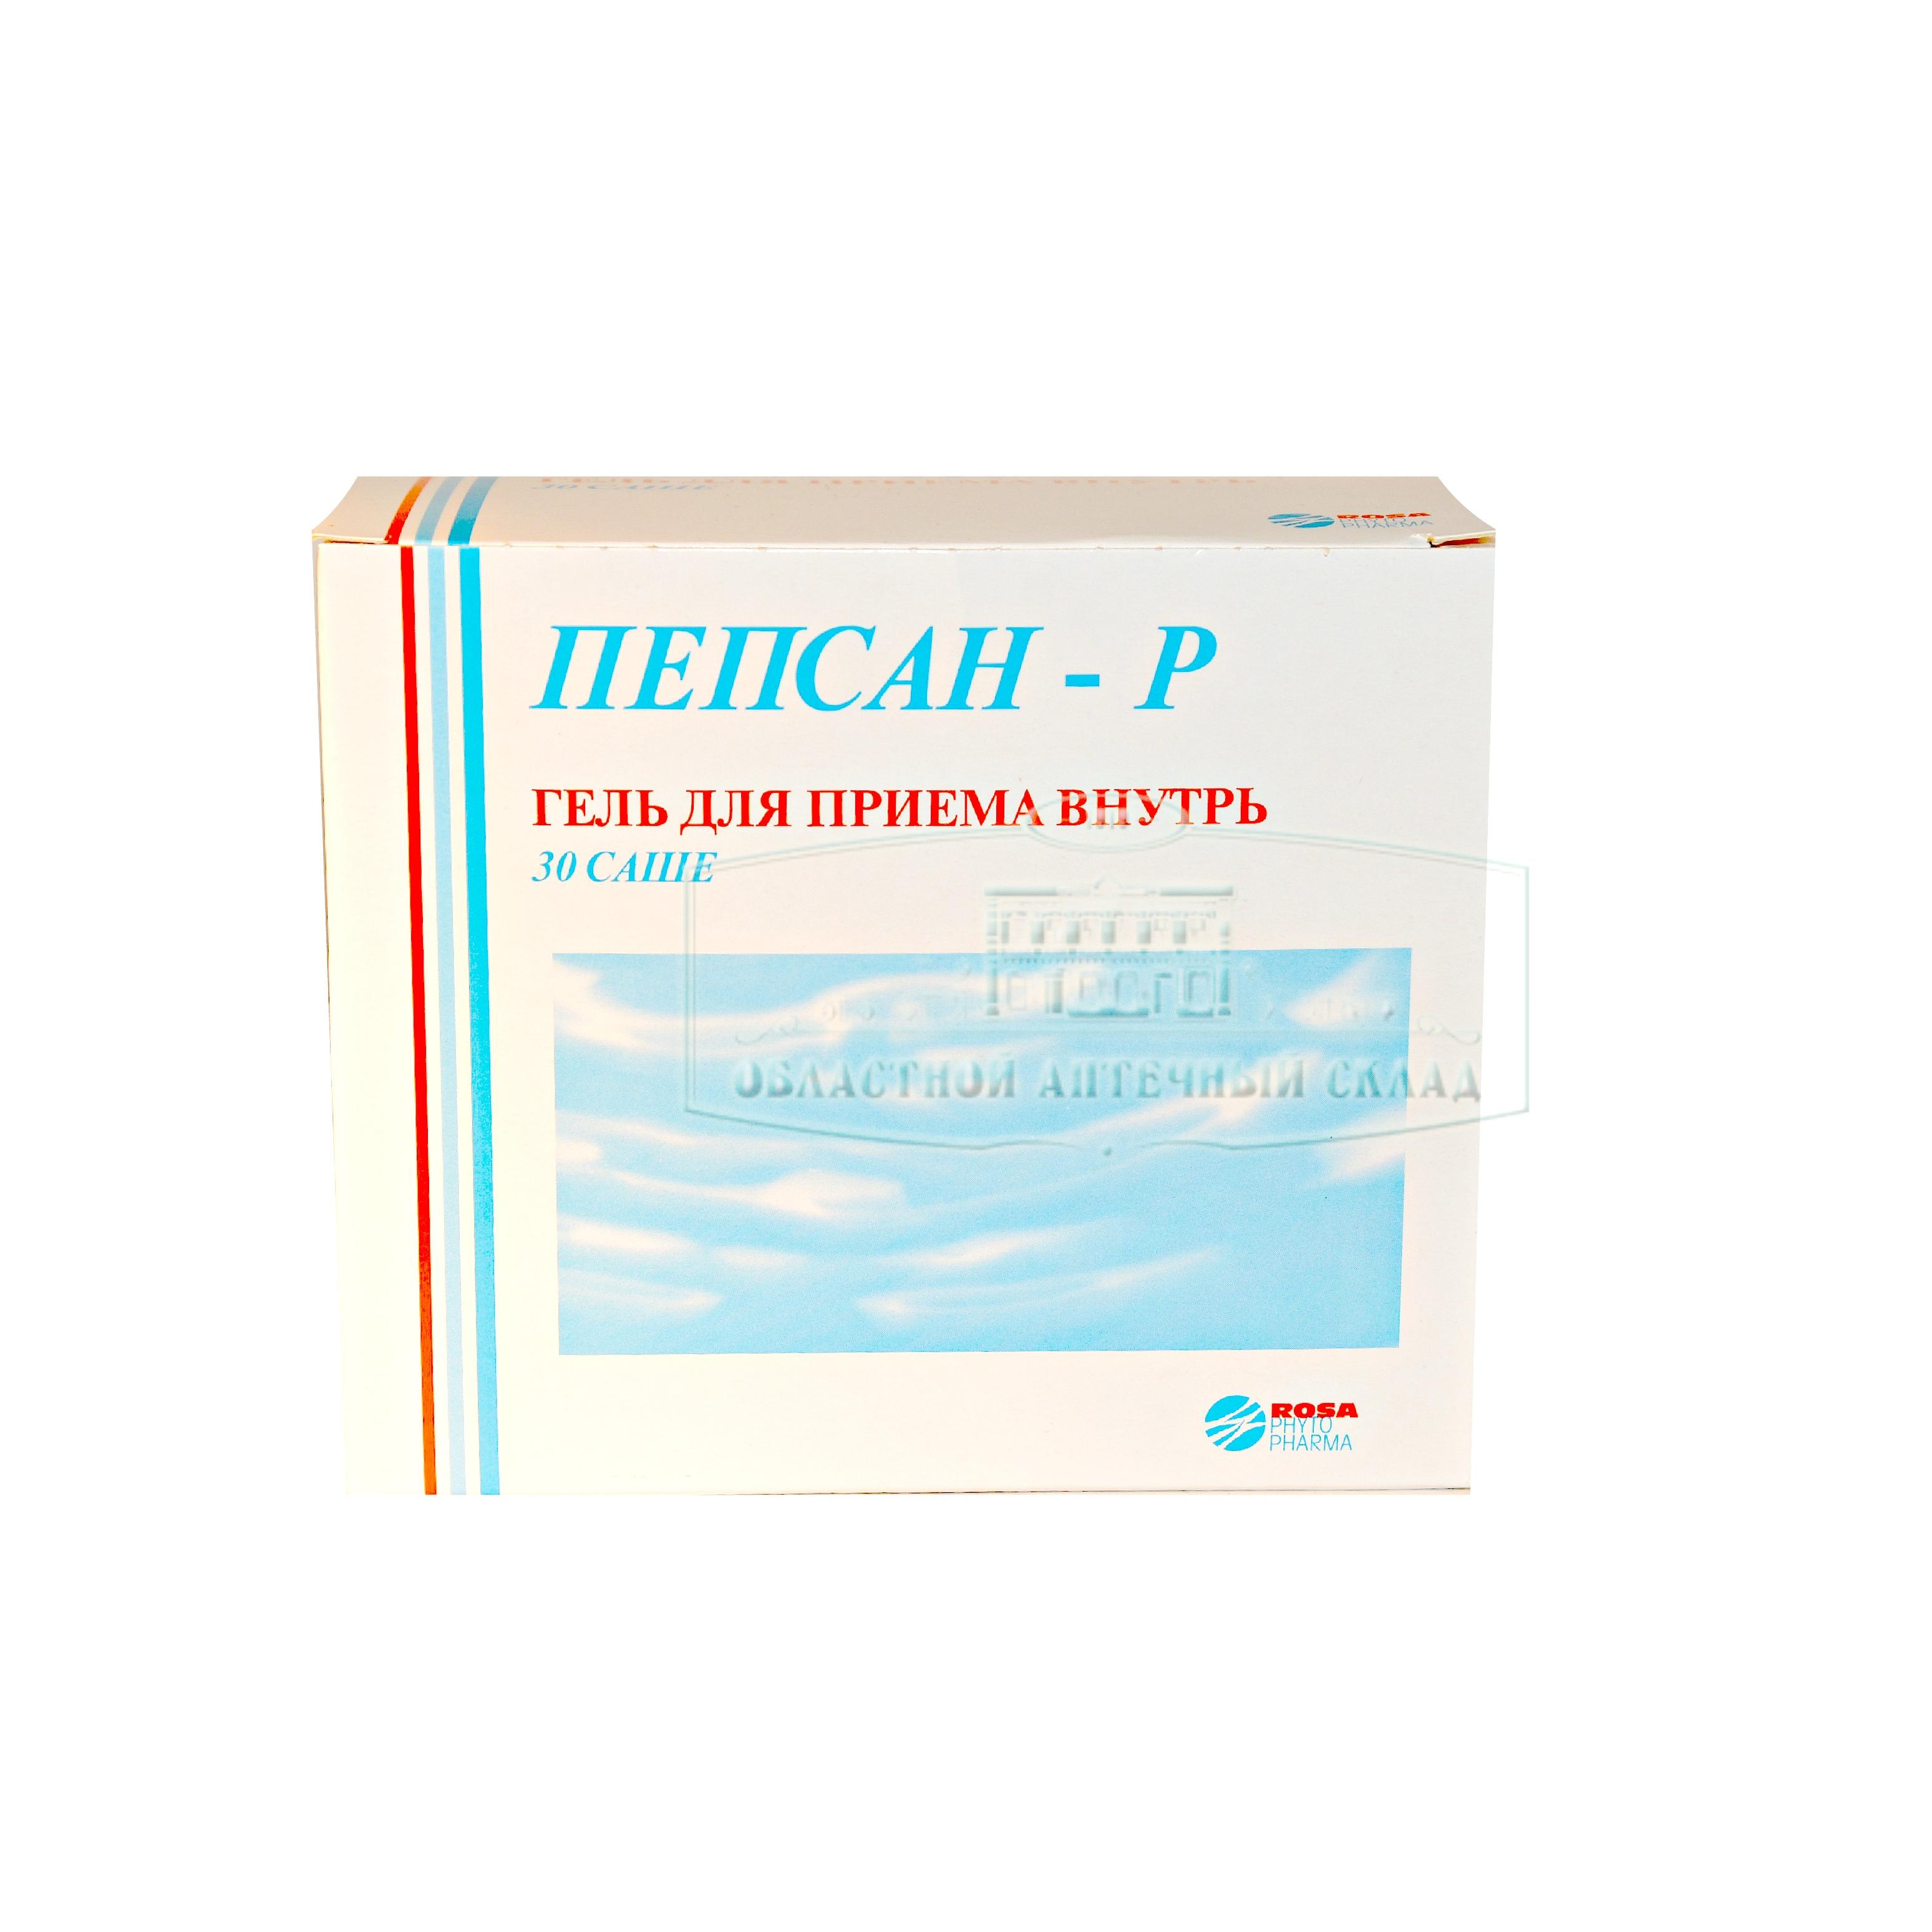 Пепсан-р гель 10г N30  в Челябинске по доступным ценам